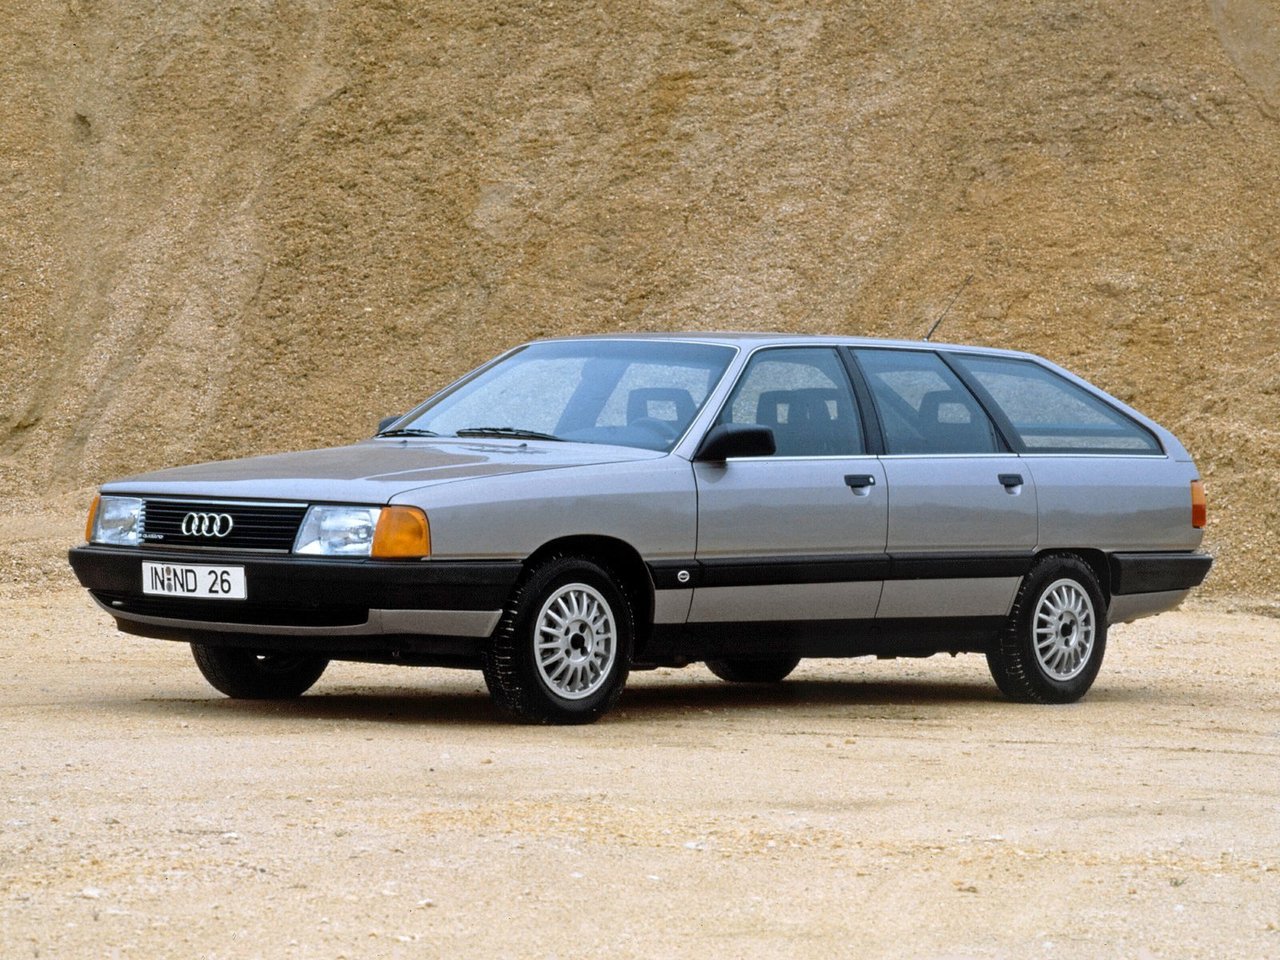 Расход газа семи комплектаций универсала пять дверей Audi 100. Разница стоимости заправки газом и бензином. Автономный пробег до и после установки ГБО.